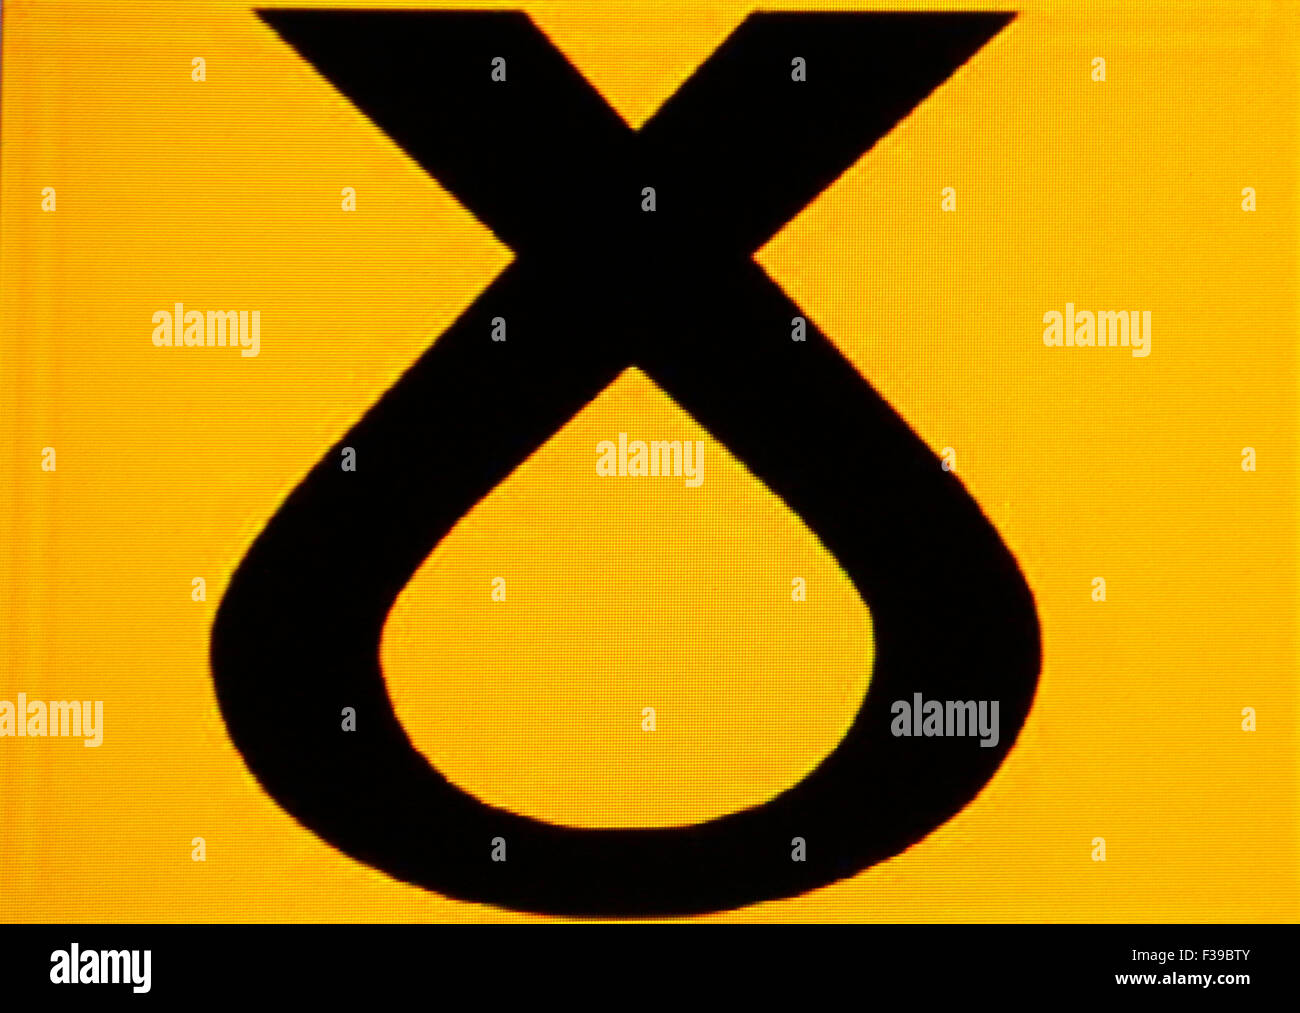 Logo der 'SNP Scottish National Party' - Referendum um die Unabhaengigkeit Schottlands am 18. September 2014 . Stock Photo